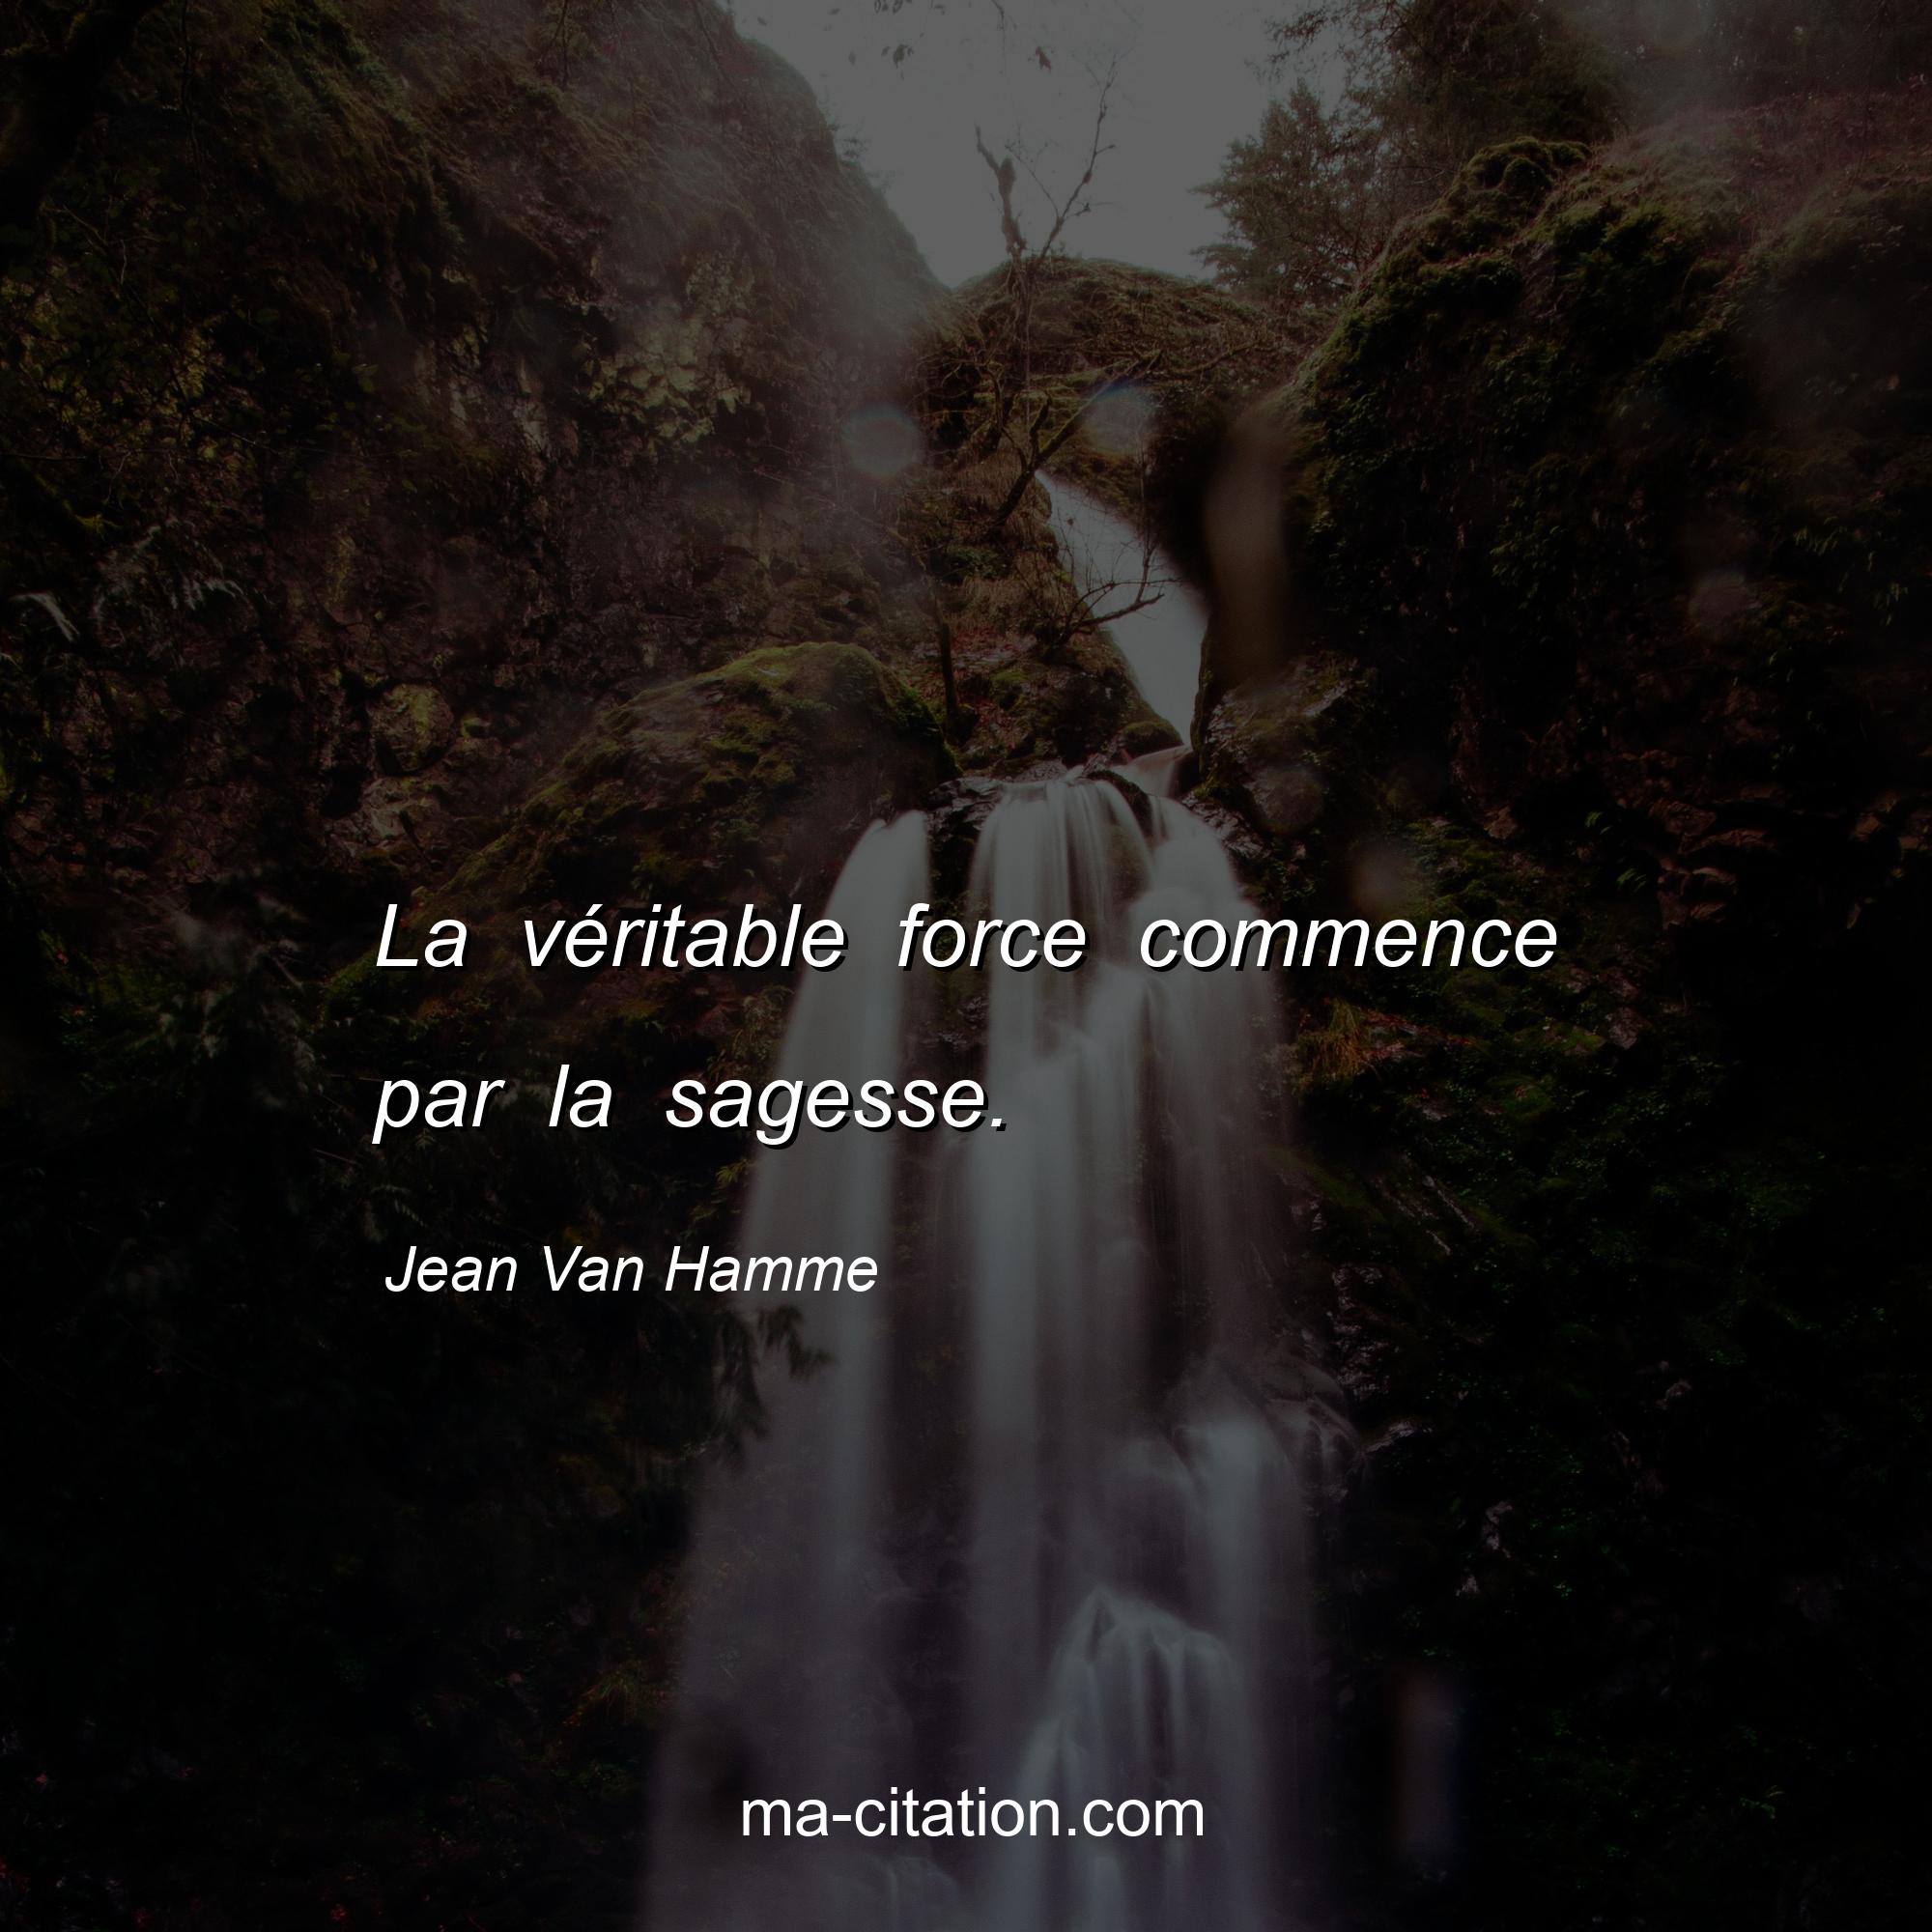 Jean Van Hamme : La véritable force commence par la sagesse.